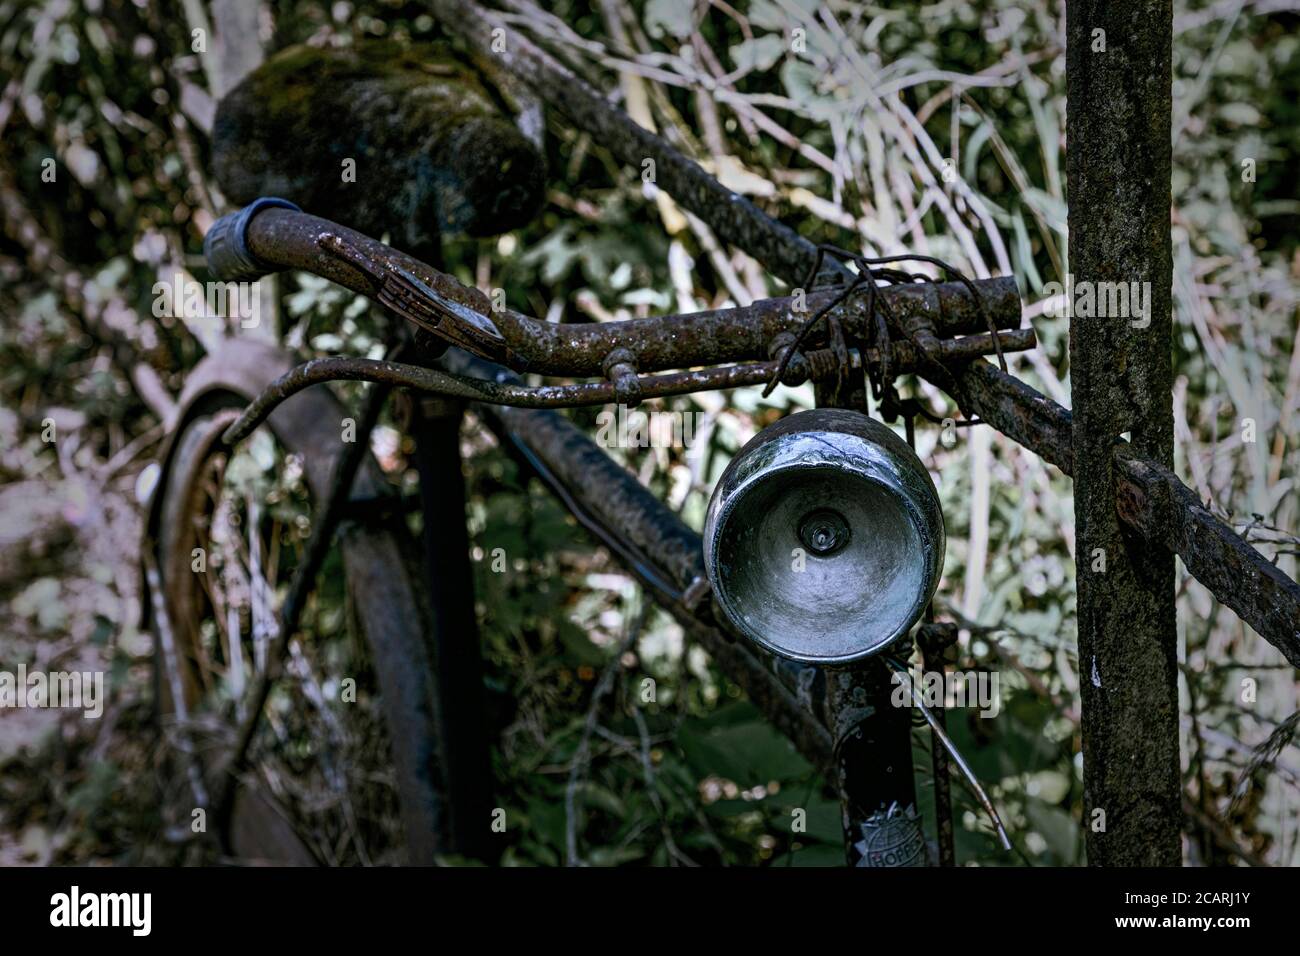 détail d'une vieille bicyclette abandonnée penchée contre la clôture avec désaturée effet Banque D'Images